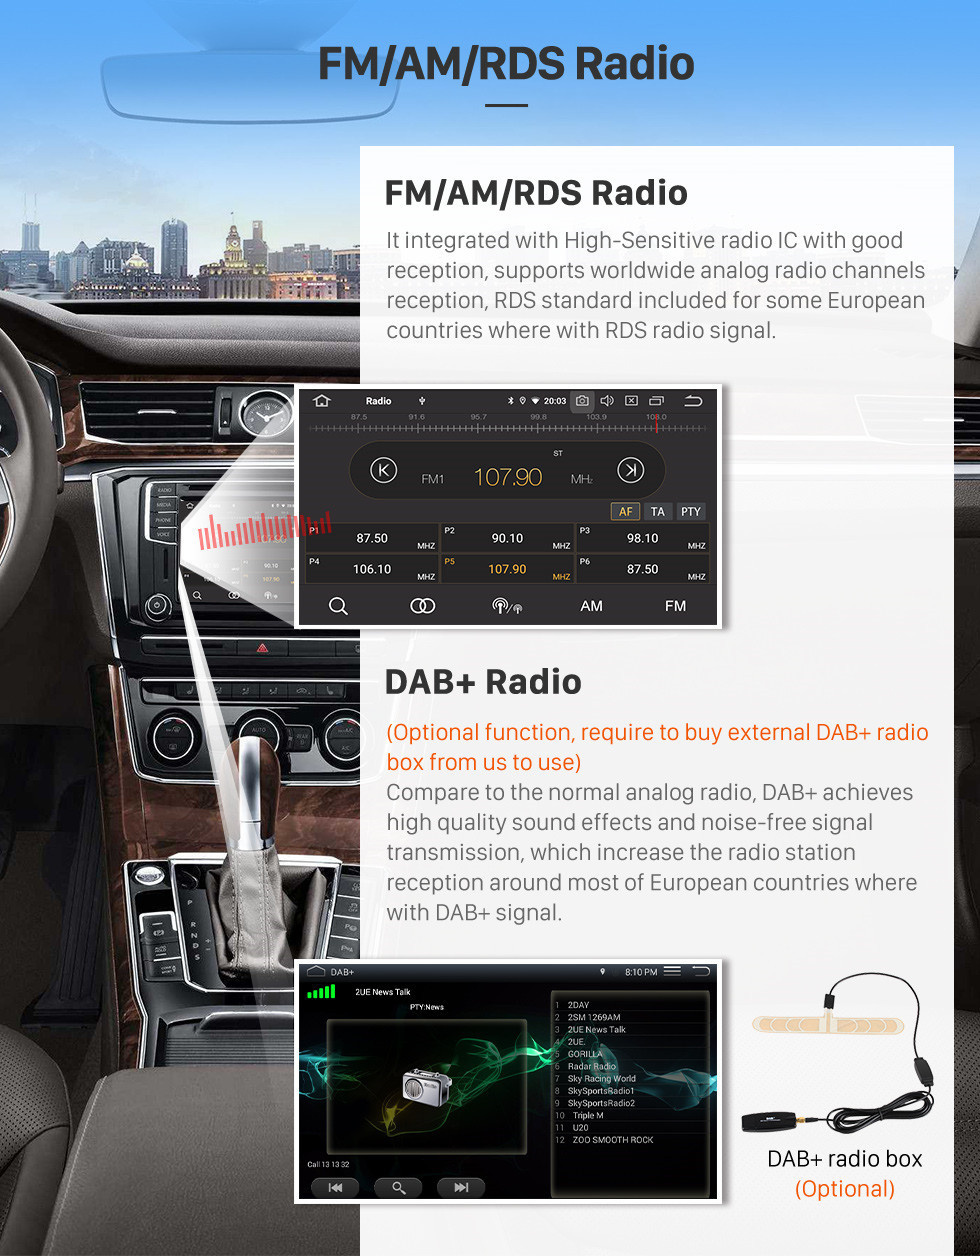 Seicane HD Touchscreen 2012-2016 Kia Cerato Android 11.0 9 polegada Navegação GPS Rádio Bluetooth USB Carplay WI-FI AUX apoio DAB + OBD2 controle de volante